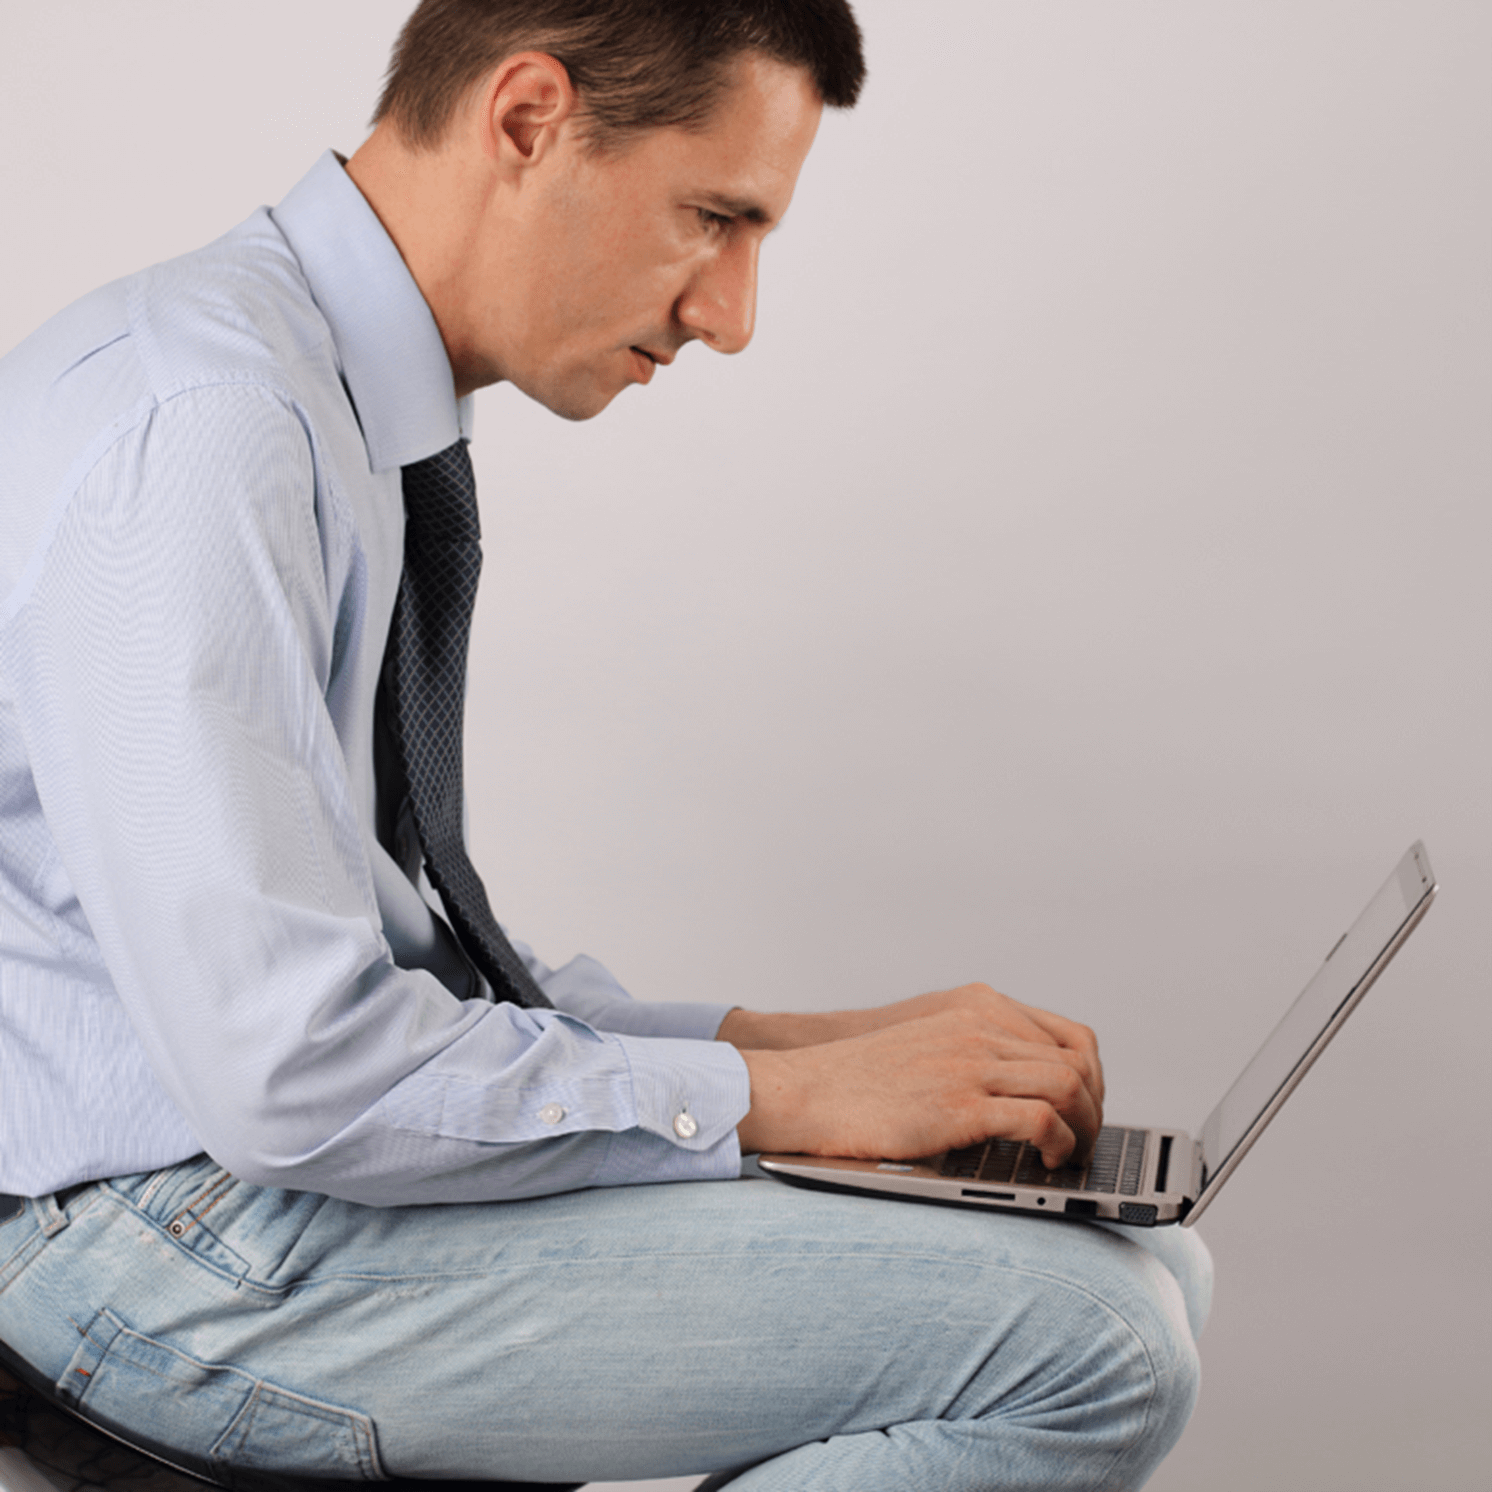 men-working-on-laptop